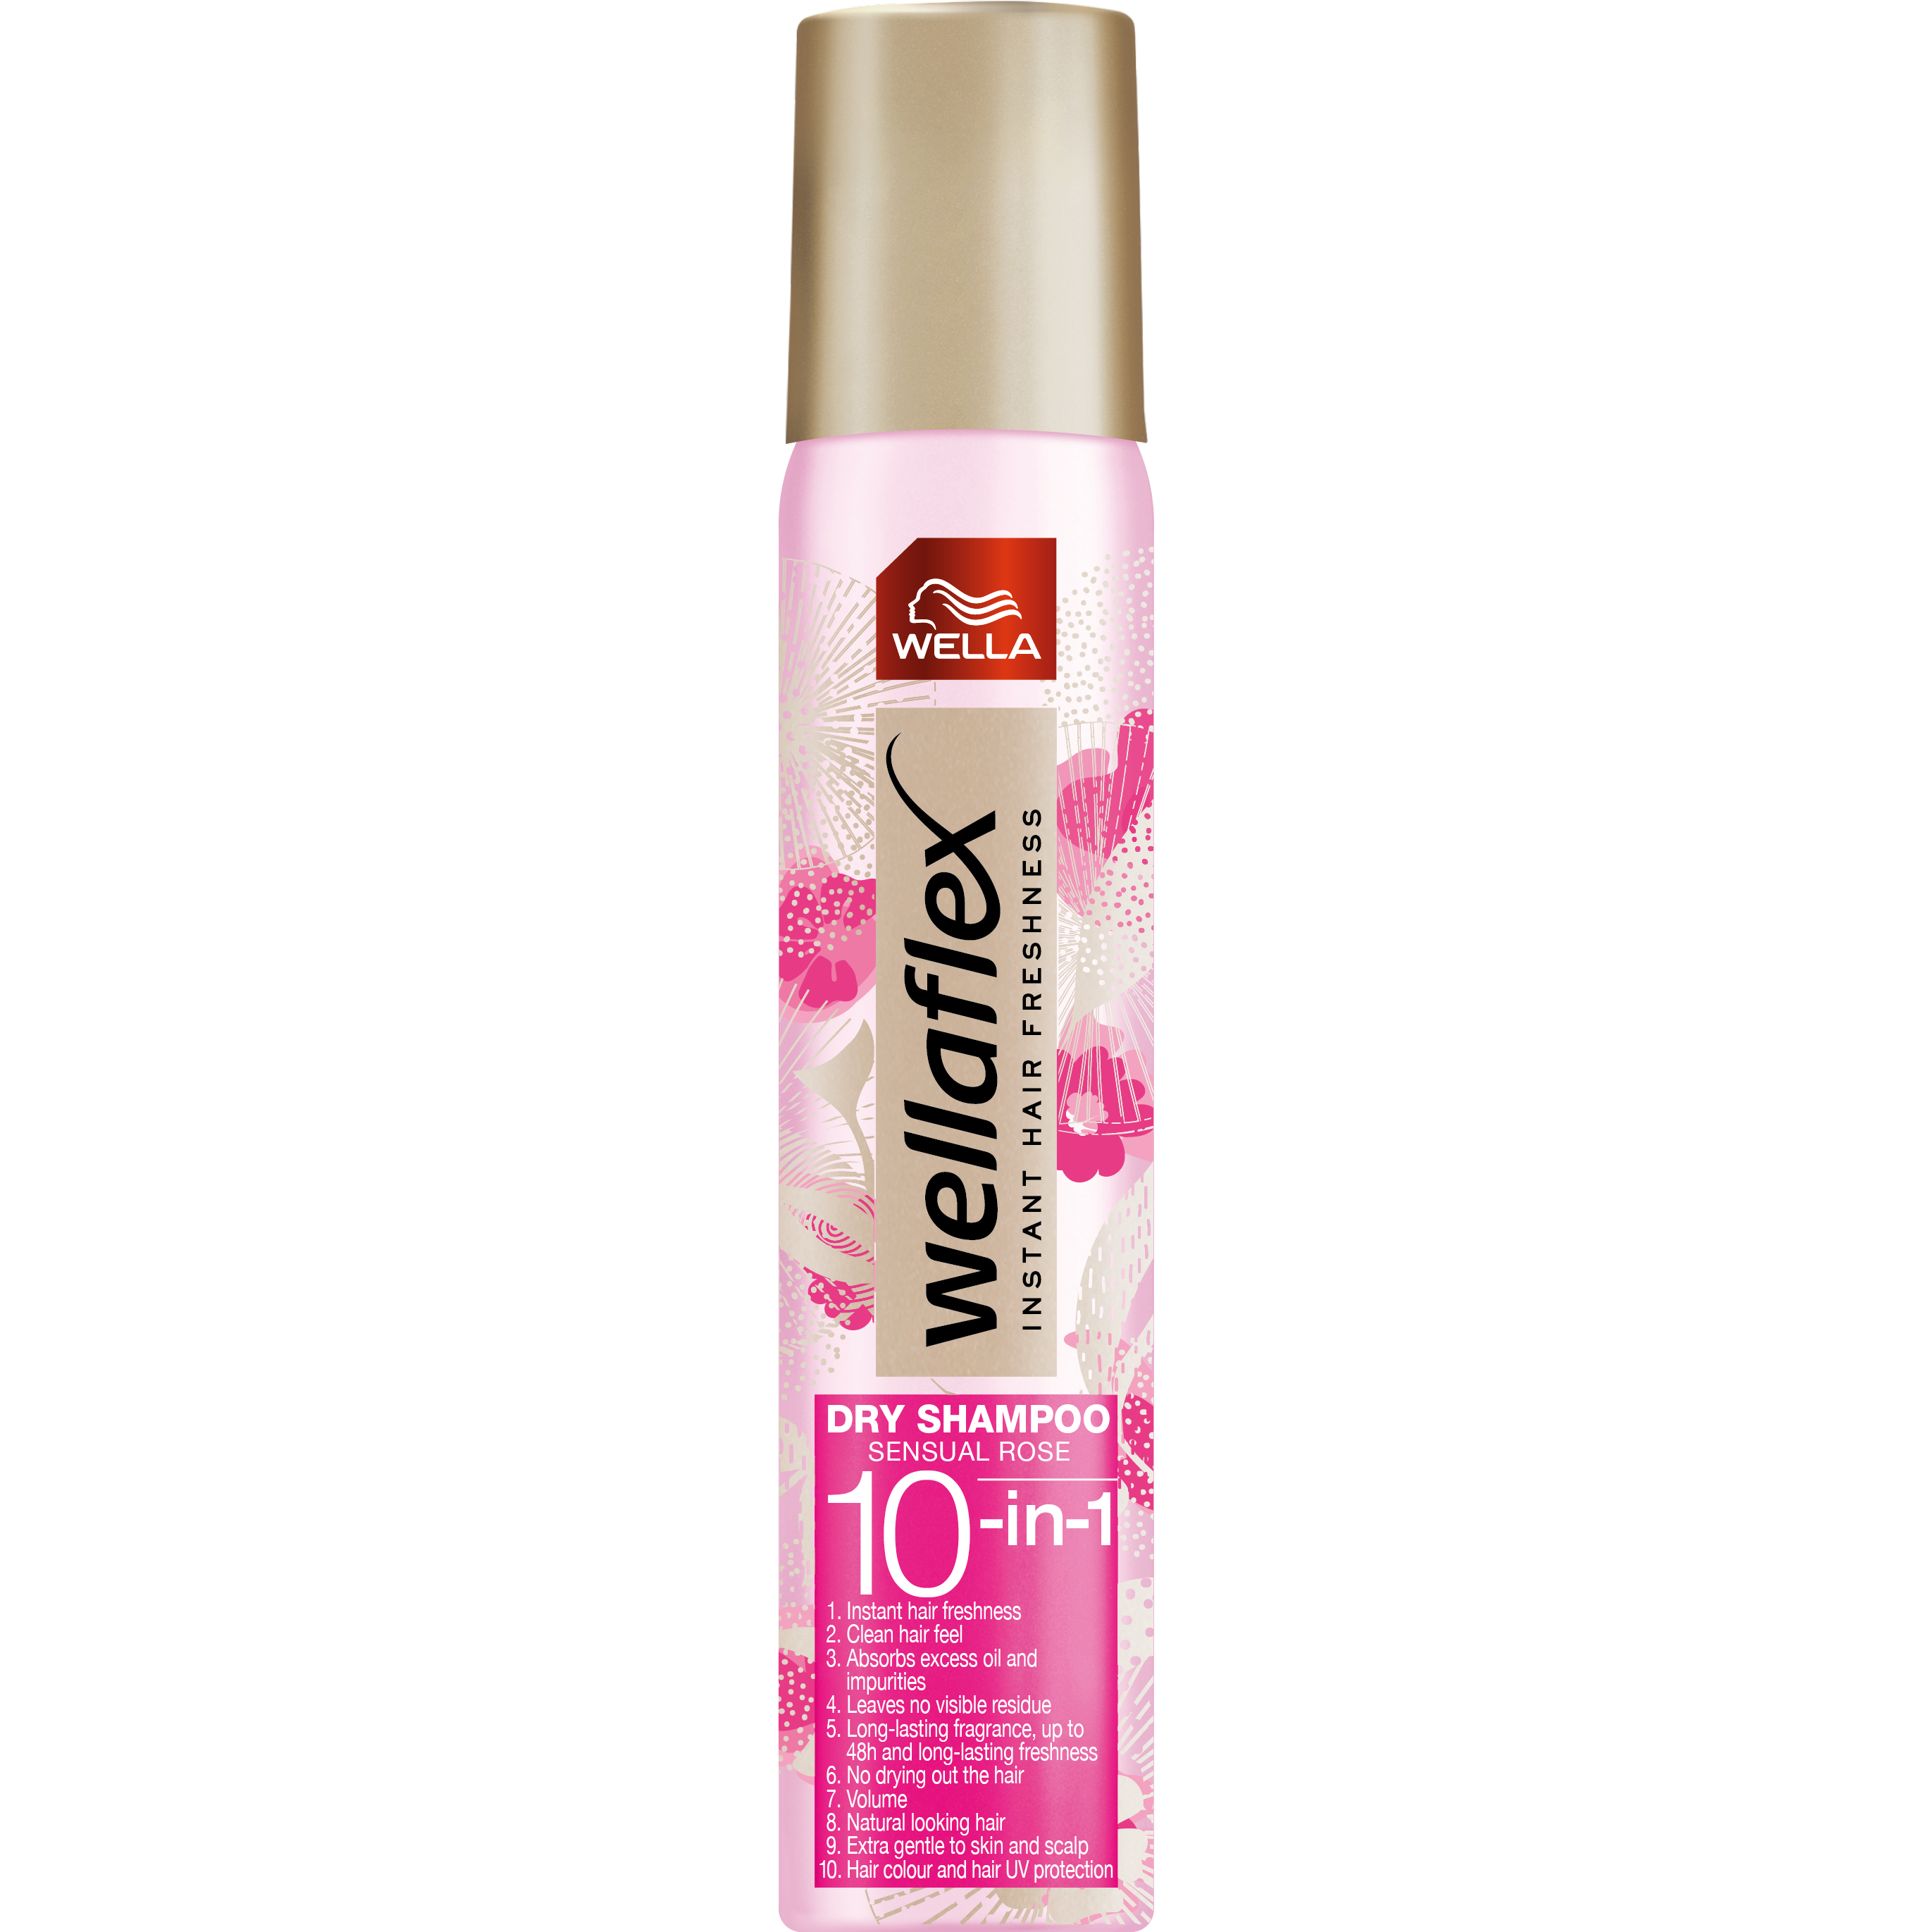 Läs mer om Wella Styling Wellaflex Dry Shampoo Sensual Rose 180 ml